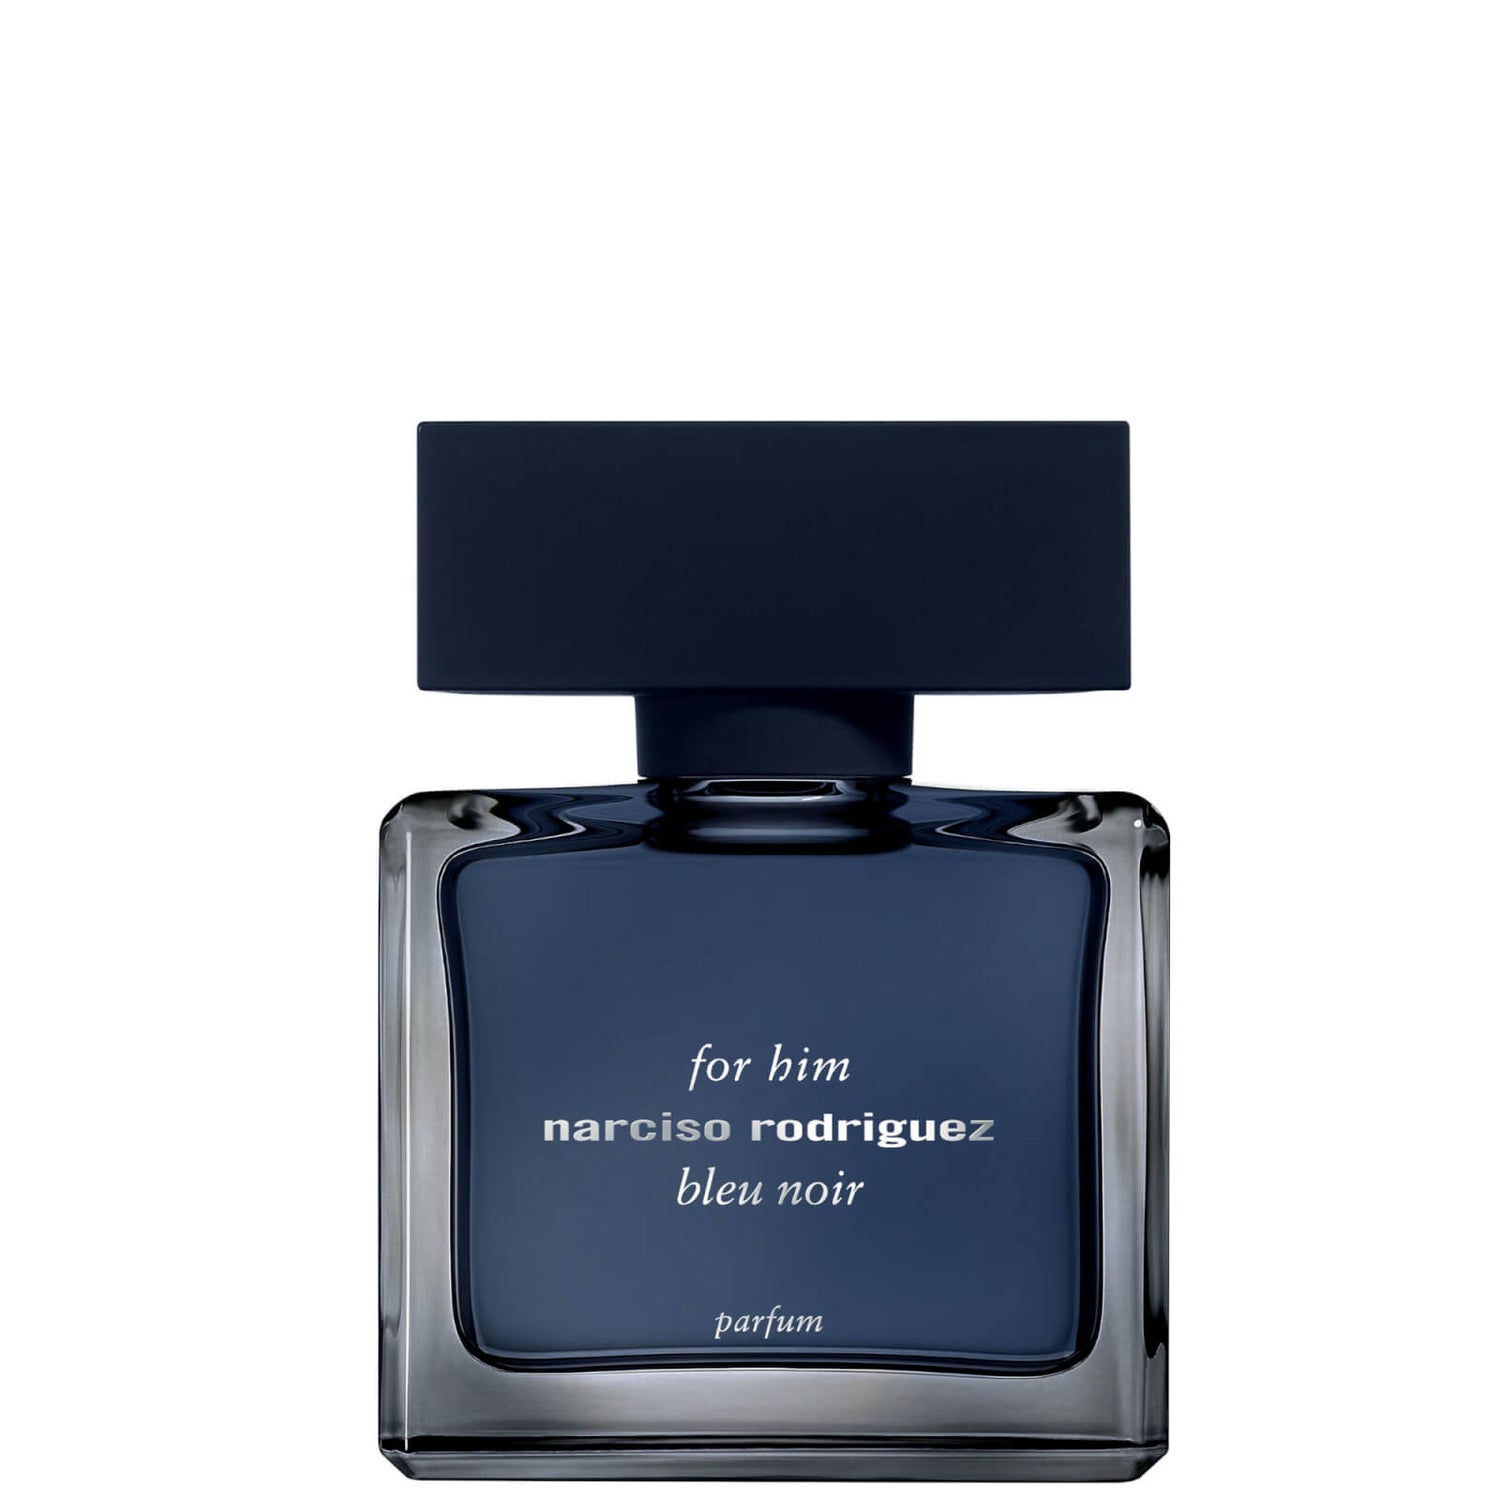 Narciso Rodriguez for Him Bleu Noir Eau de Parfum - 50 ml